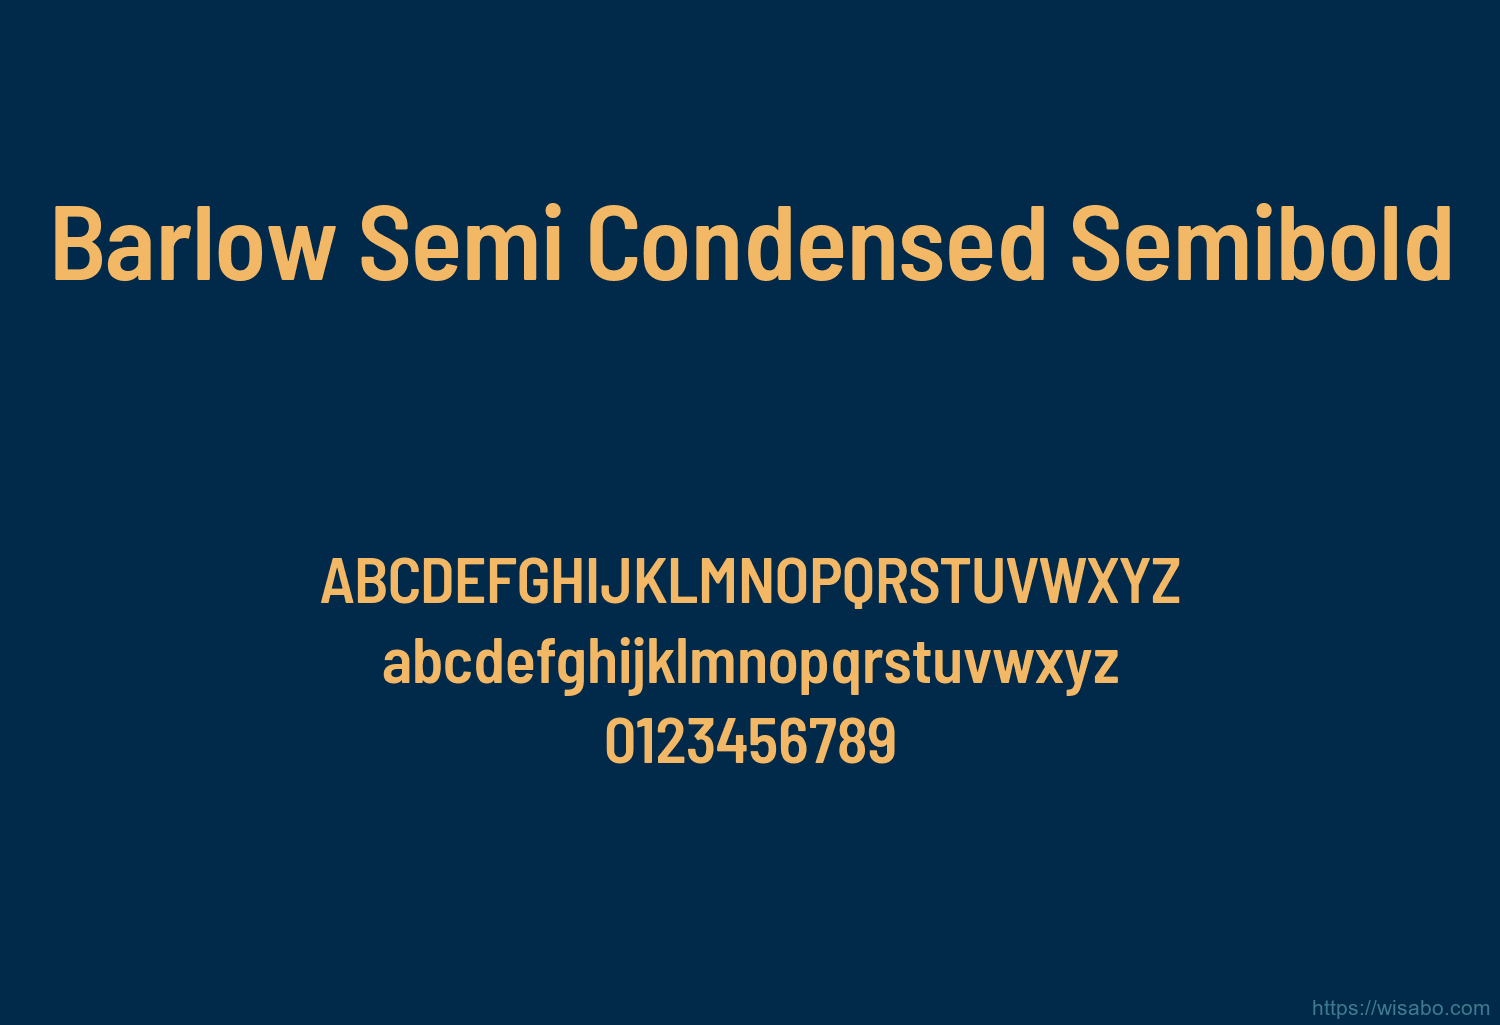 Barlow Semi Condensed Semibold